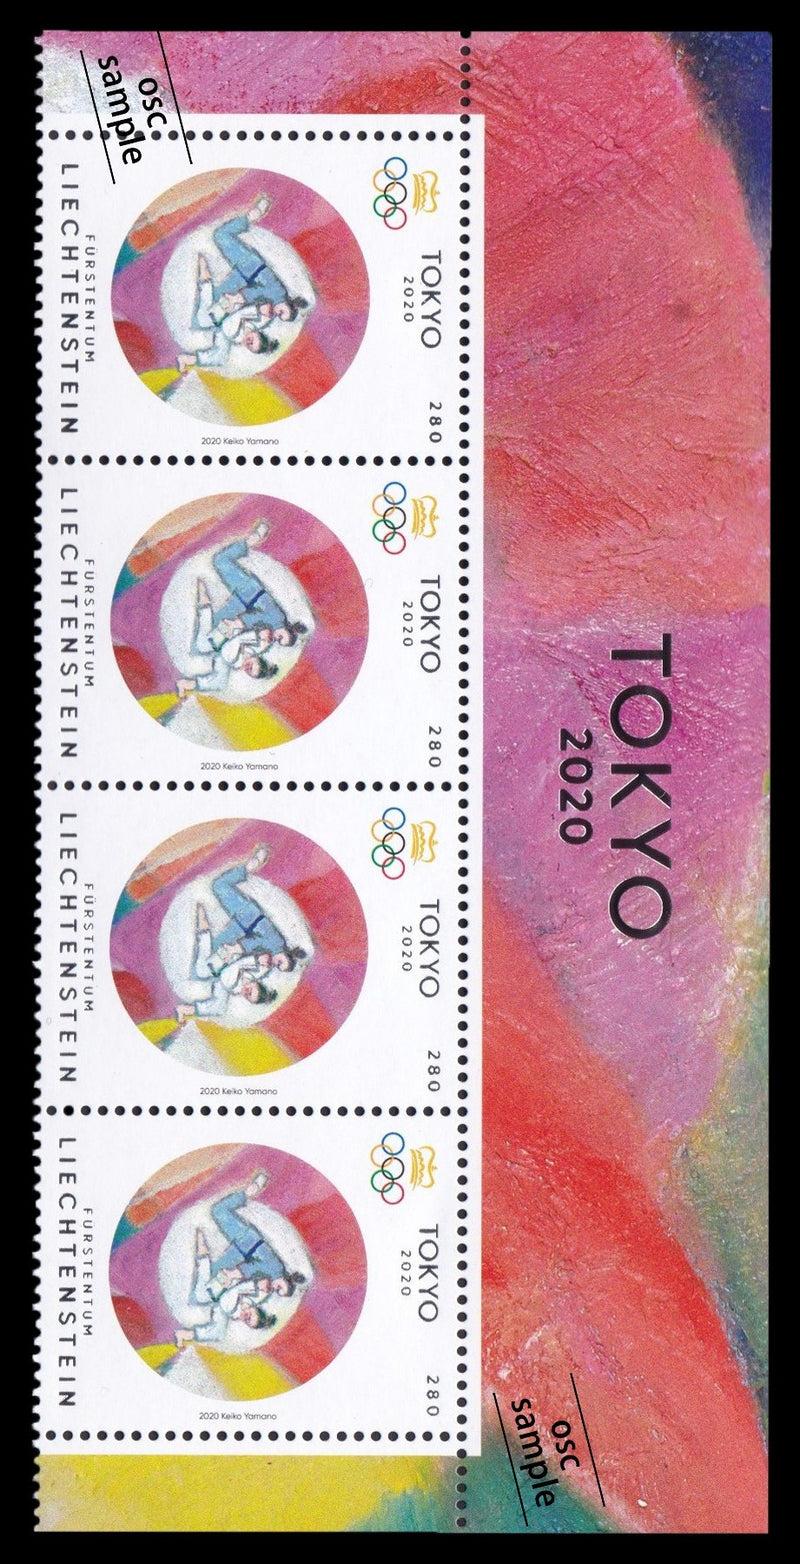 TOKYO2020 commemorative stamps of Liechtenstein(block of 4 with margin)